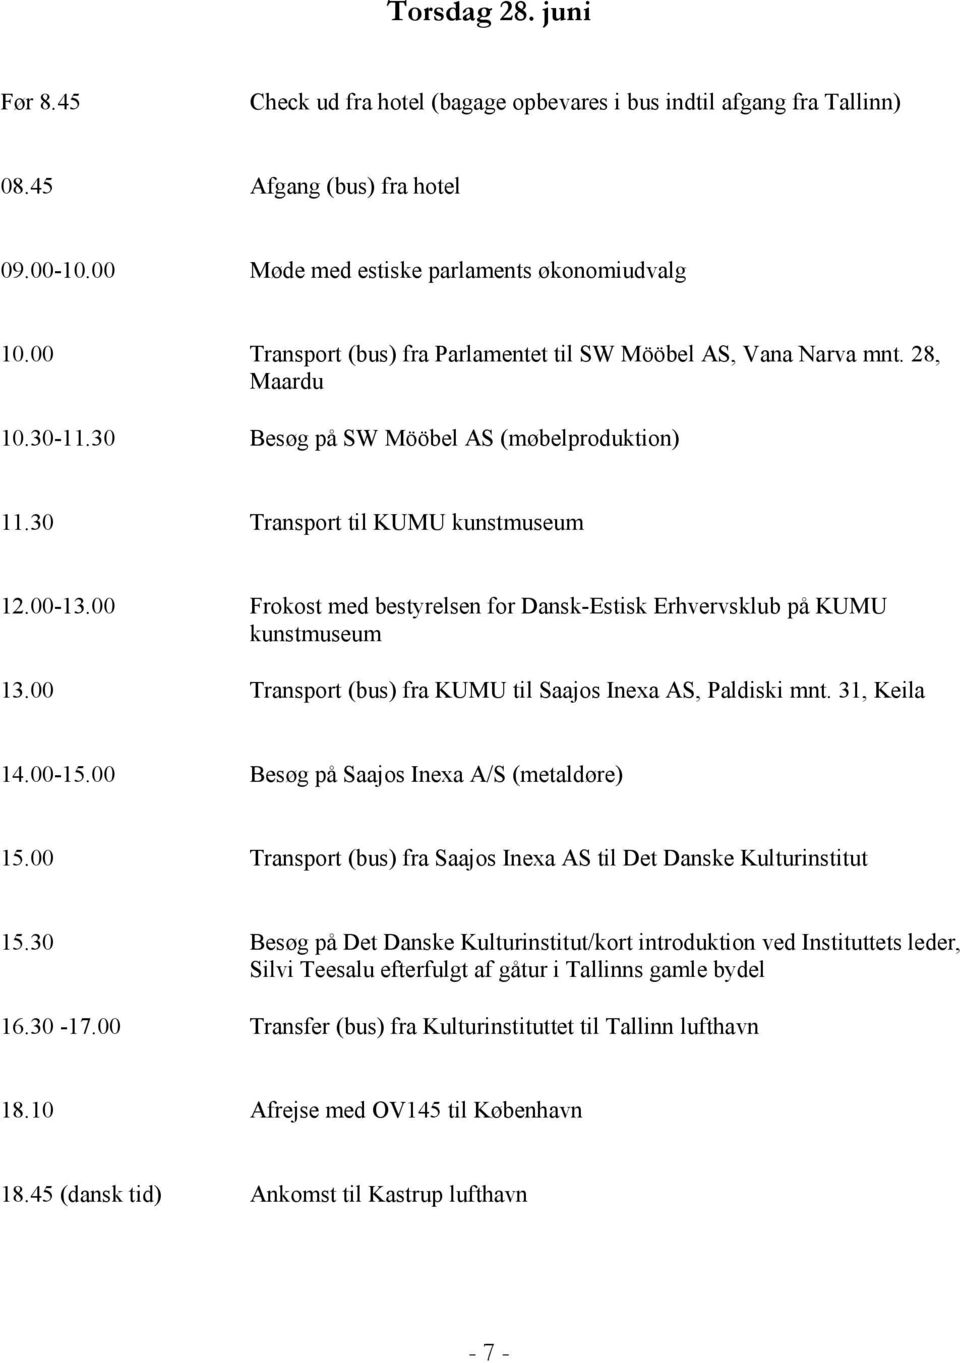 00 Frokost med bestyrelsen for Dansk-Estisk Erhvervsklub på KUMU kunstmuseum 13.00 Transport (bus) fra KUMU til Saajos Inexa AS, Paldiski mnt. 31, Keila 14.00-15.